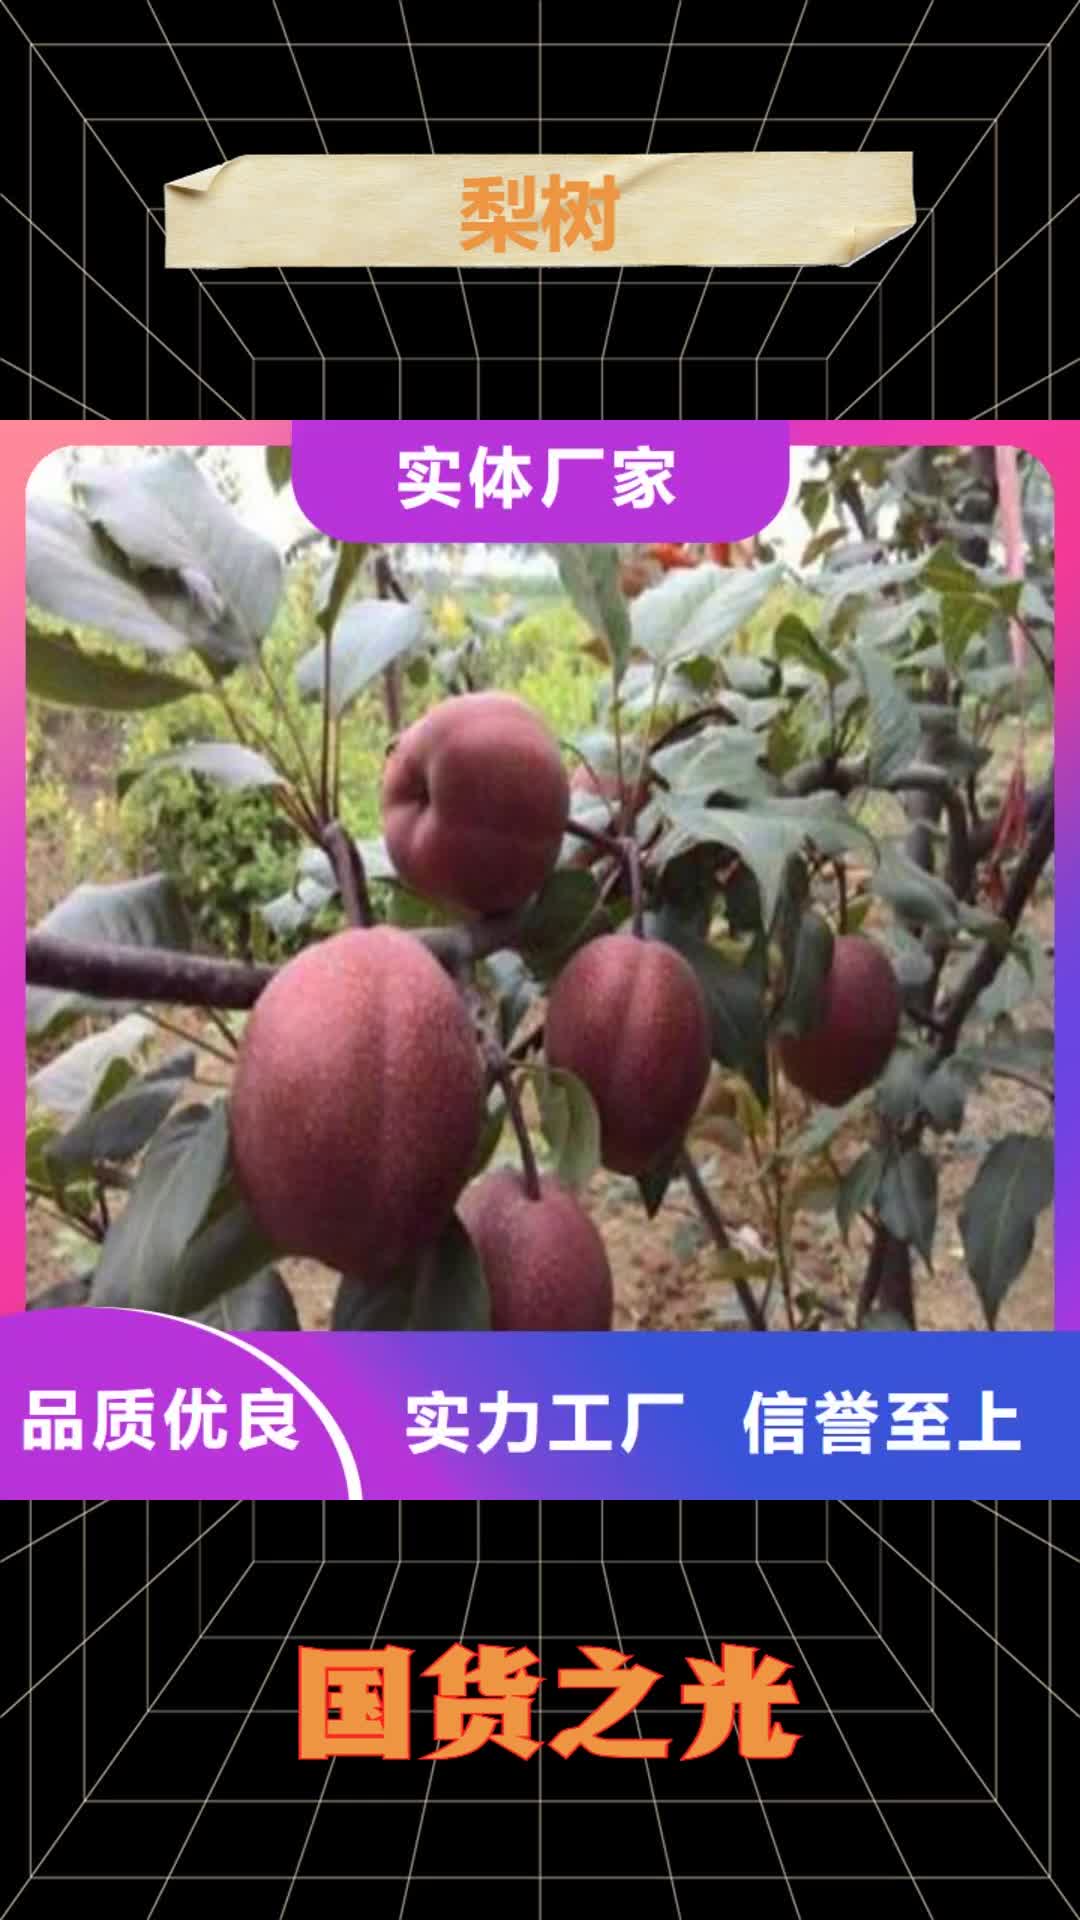 大连【梨树】桃树苗精工细作品质优良